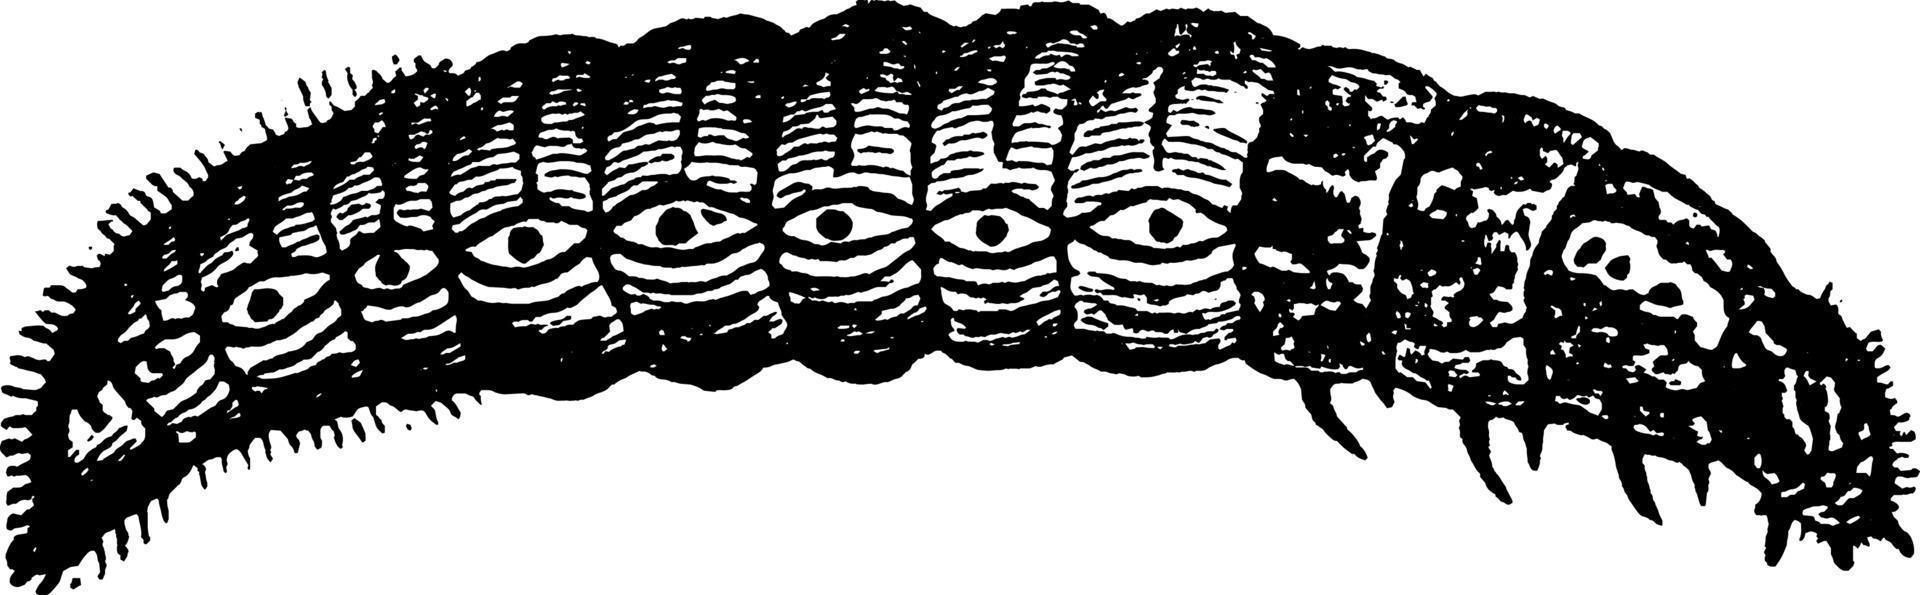 Bagworm, vintage illustration. vector